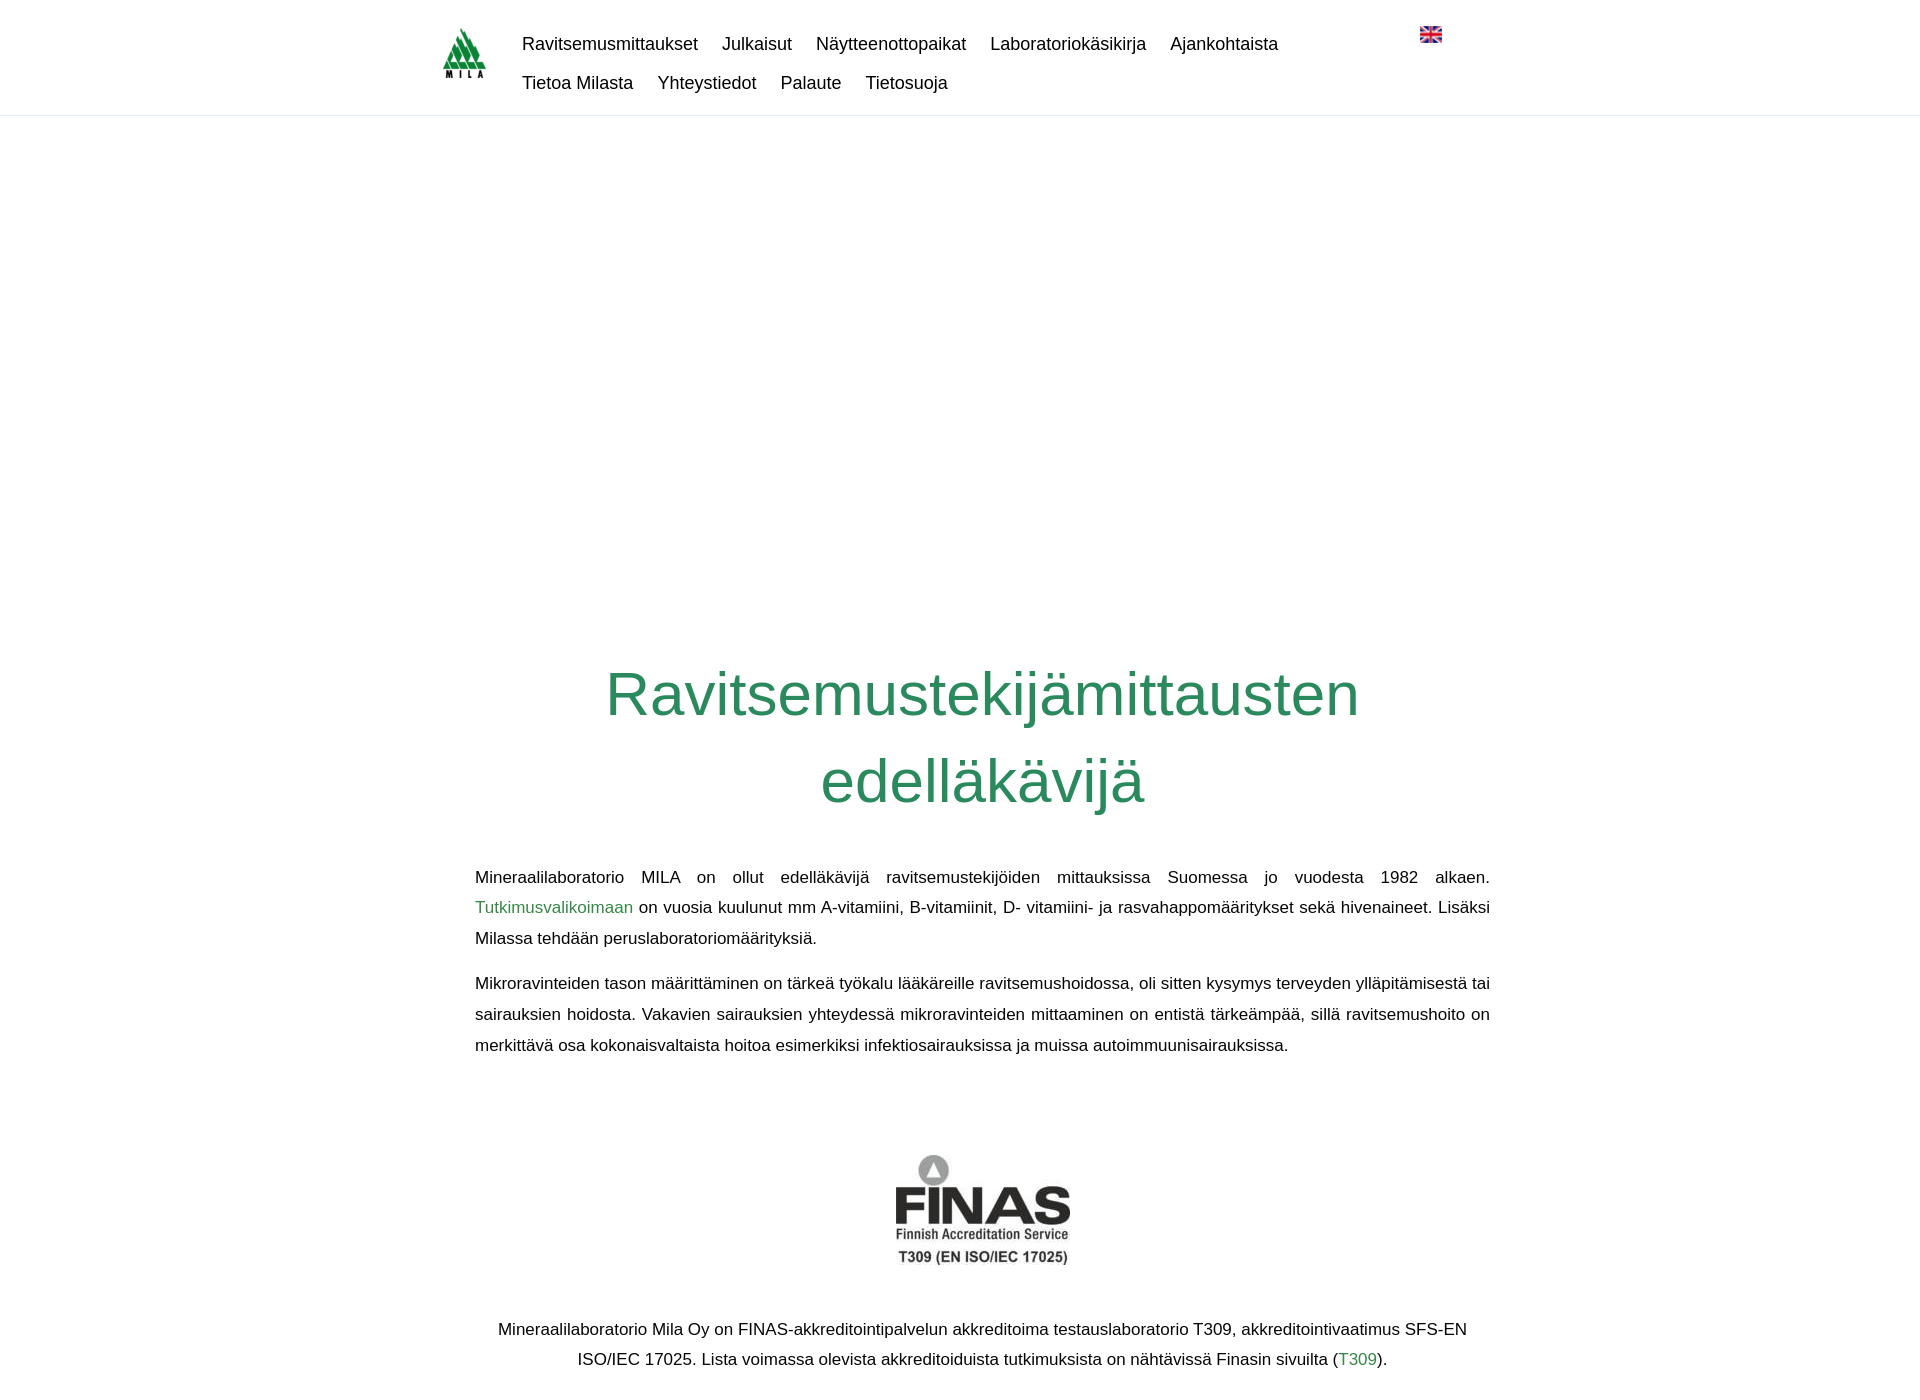 Skärmdump för mineraalilaboratoriomila.fi